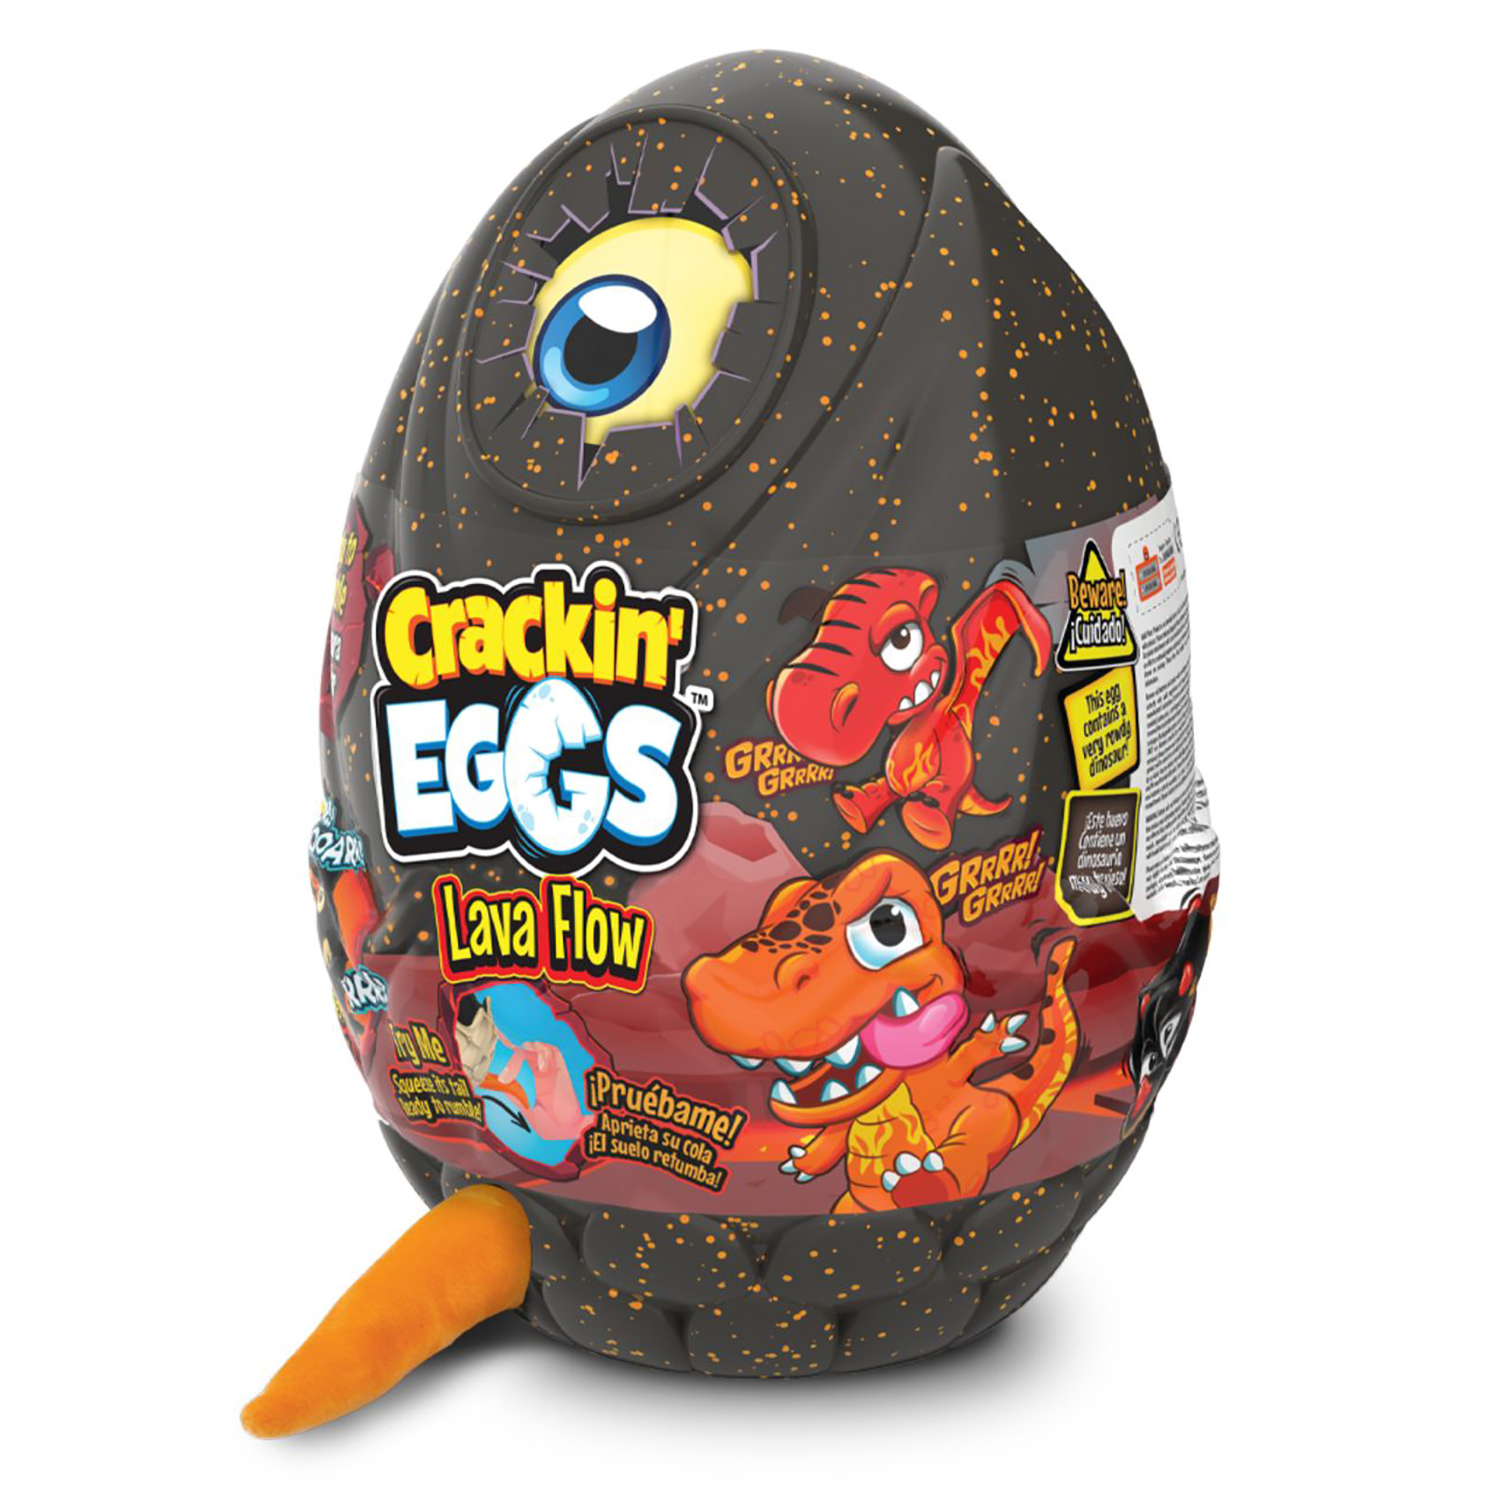 Мягкая игрушка Crackin' Eggs Динозавр оранжевый в яйце, серия Лава, 22 см дракон dragon эффект дыма откладывает яйца с проектором оранжевый